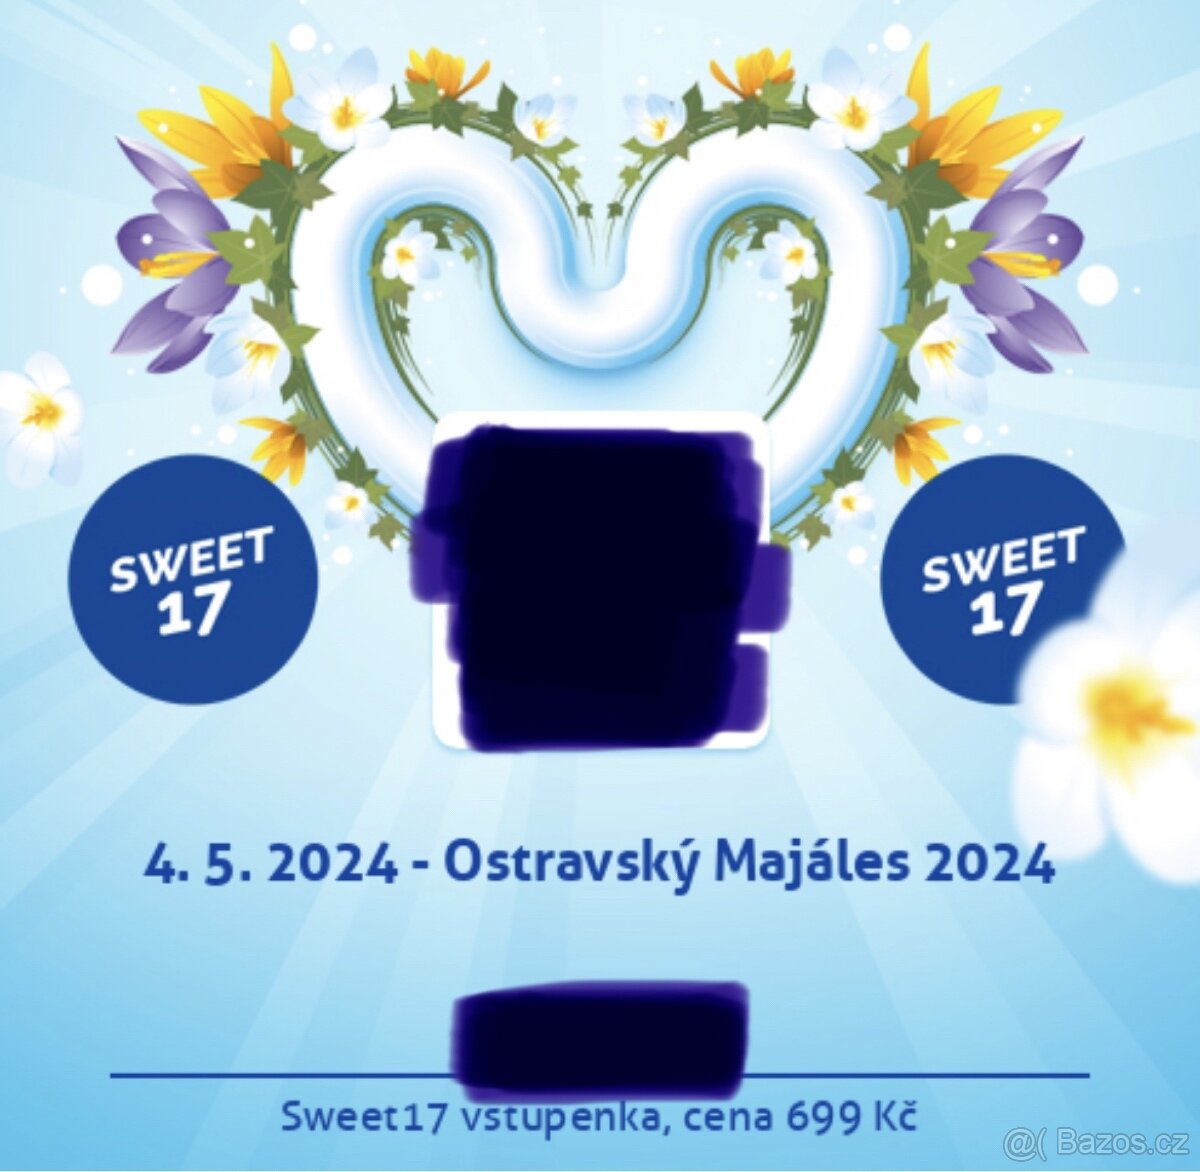 Sweet17 vstupenka na Ostravský Majáles